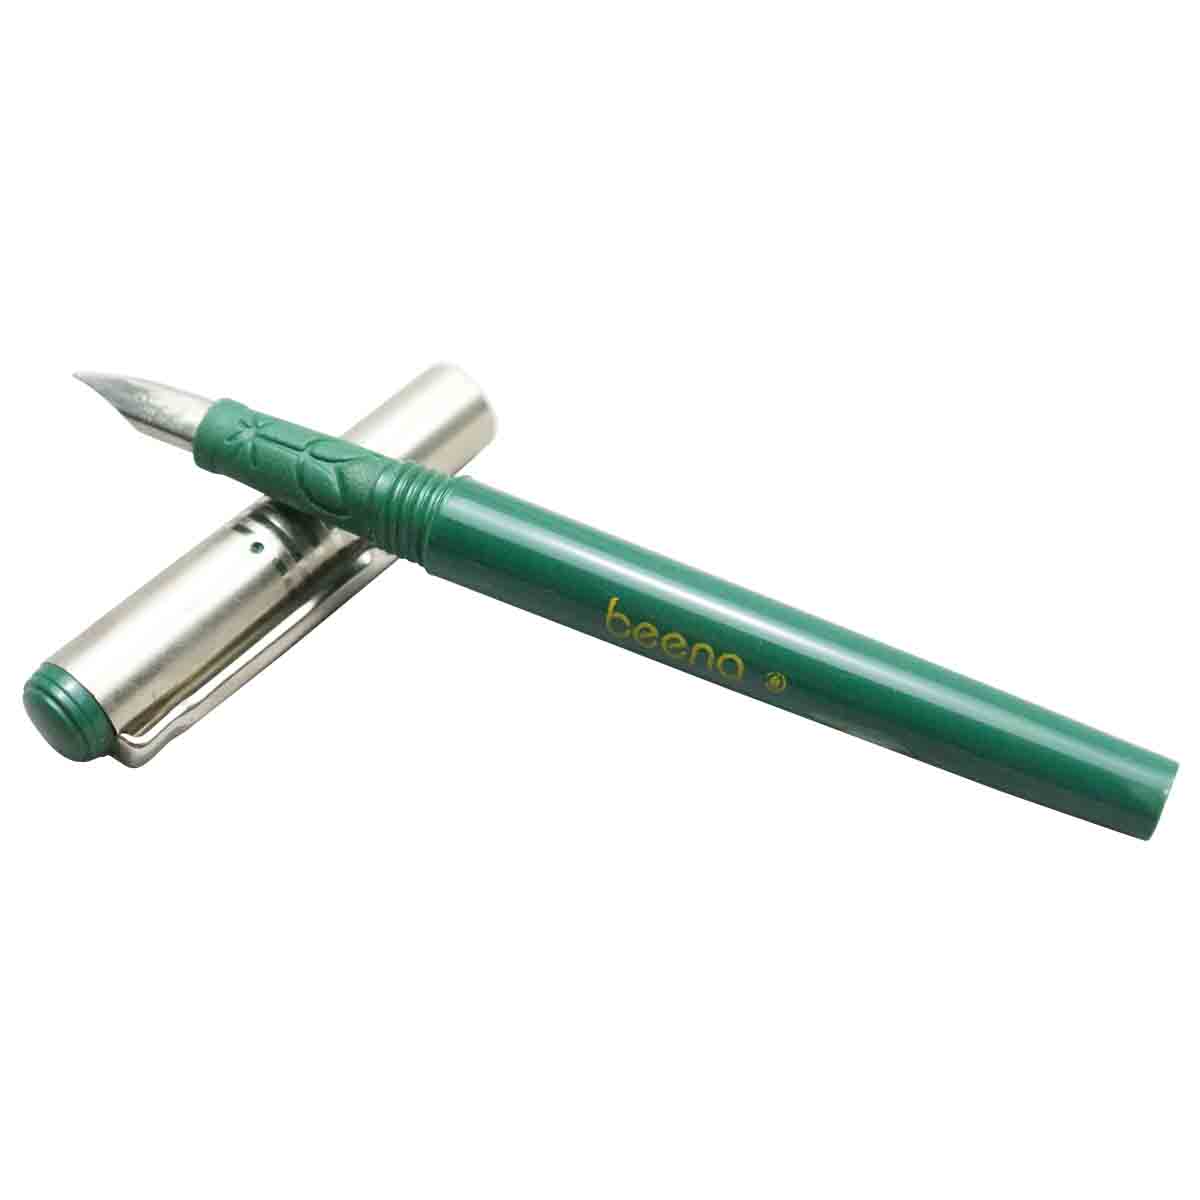 Beena Silver Cap Green  Body Fountain Pen Model - 91100